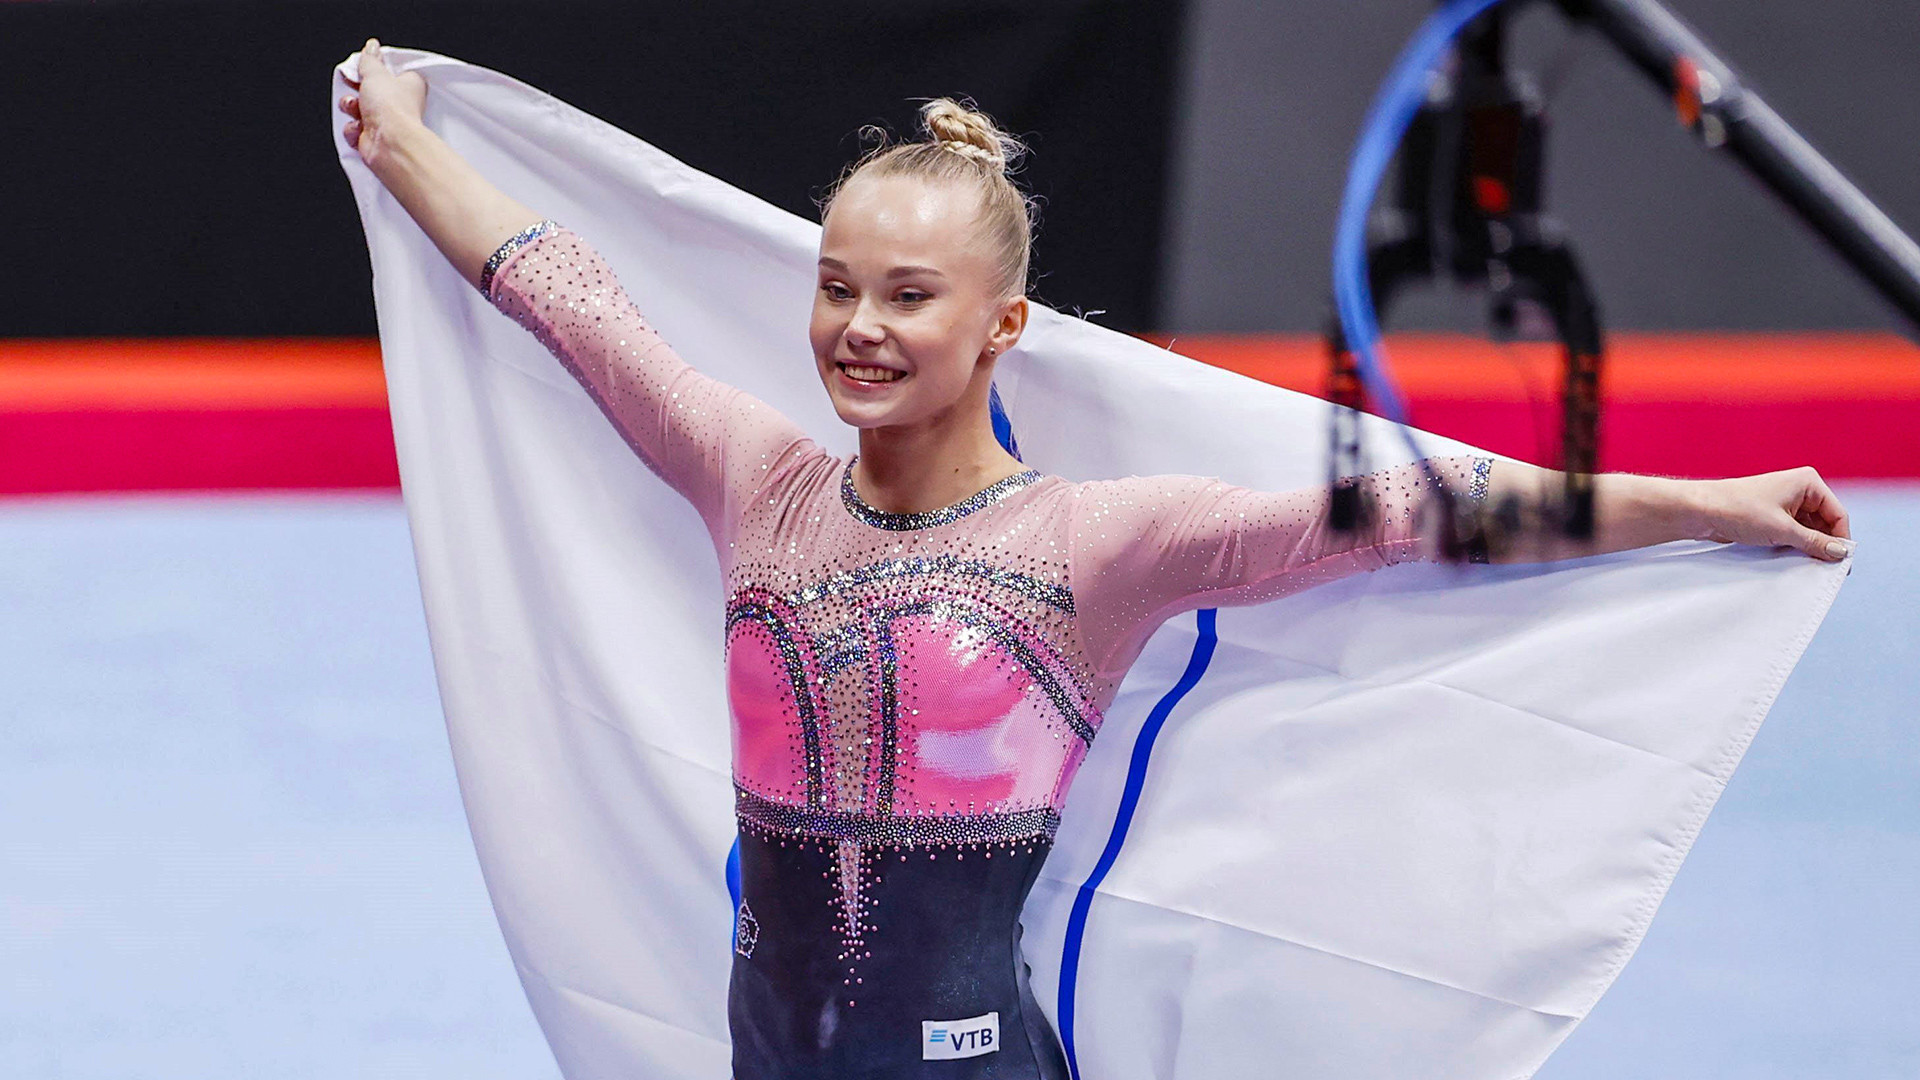 La gymnaste russe Angelina Melnikova célèbre sa victoire lors des Championnats du monde de gymnastique artistique, le 21 octobre 2021, à Kitakyūshū, au Japon.
